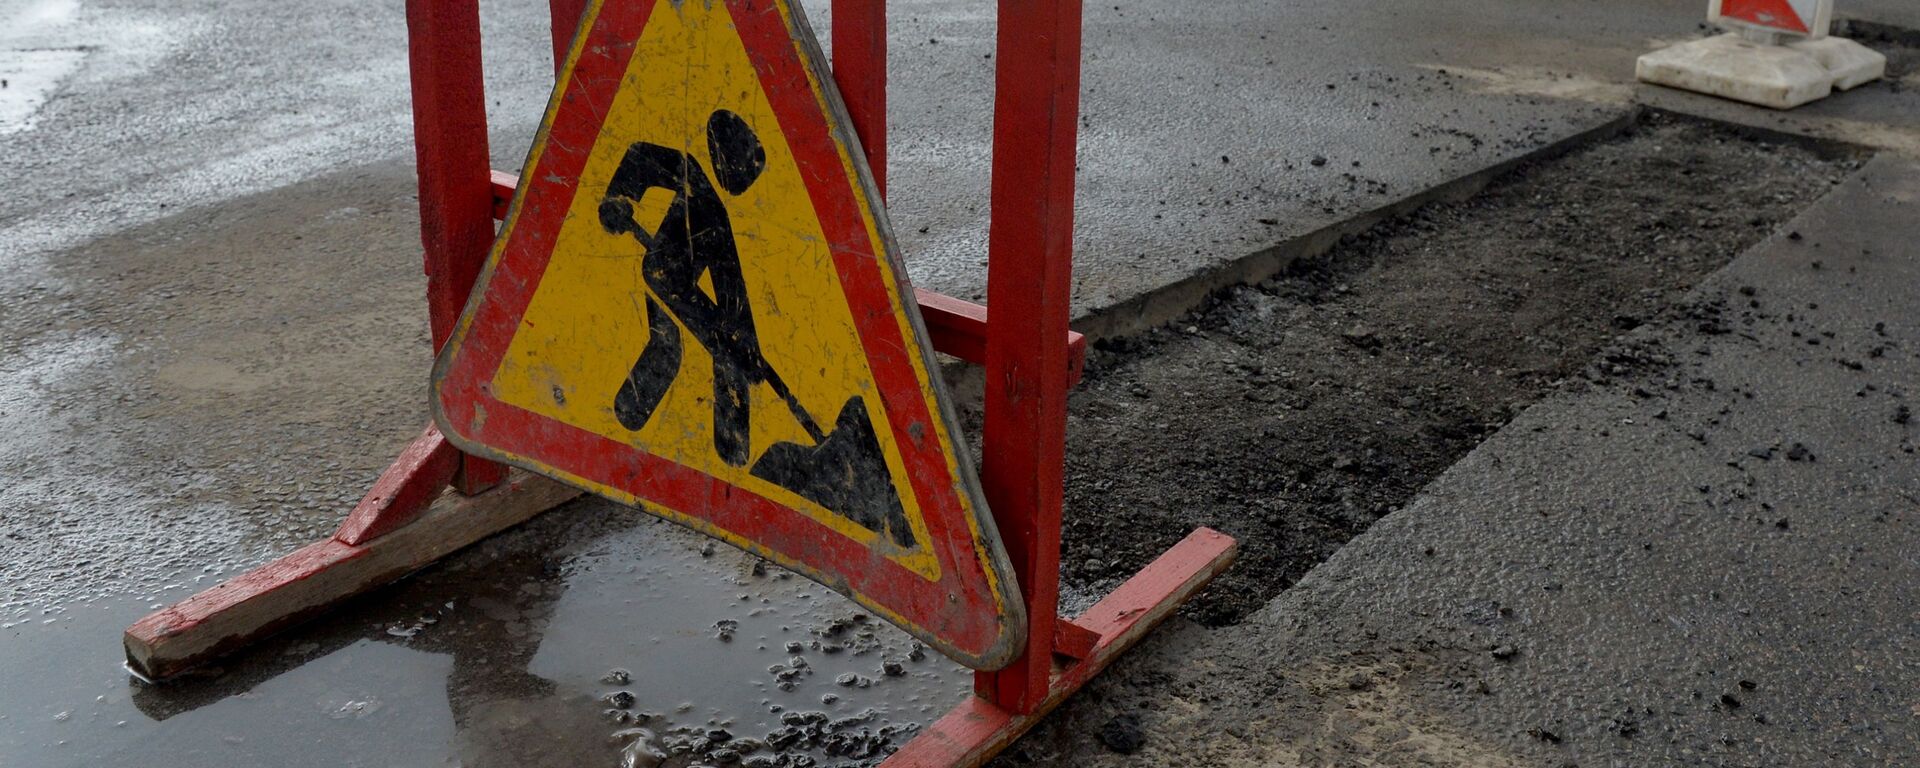 Ямочные ремонты дорог идут по всему городу, практически без выходных - Sputnik Беларусь, 1920, 19.02.2019